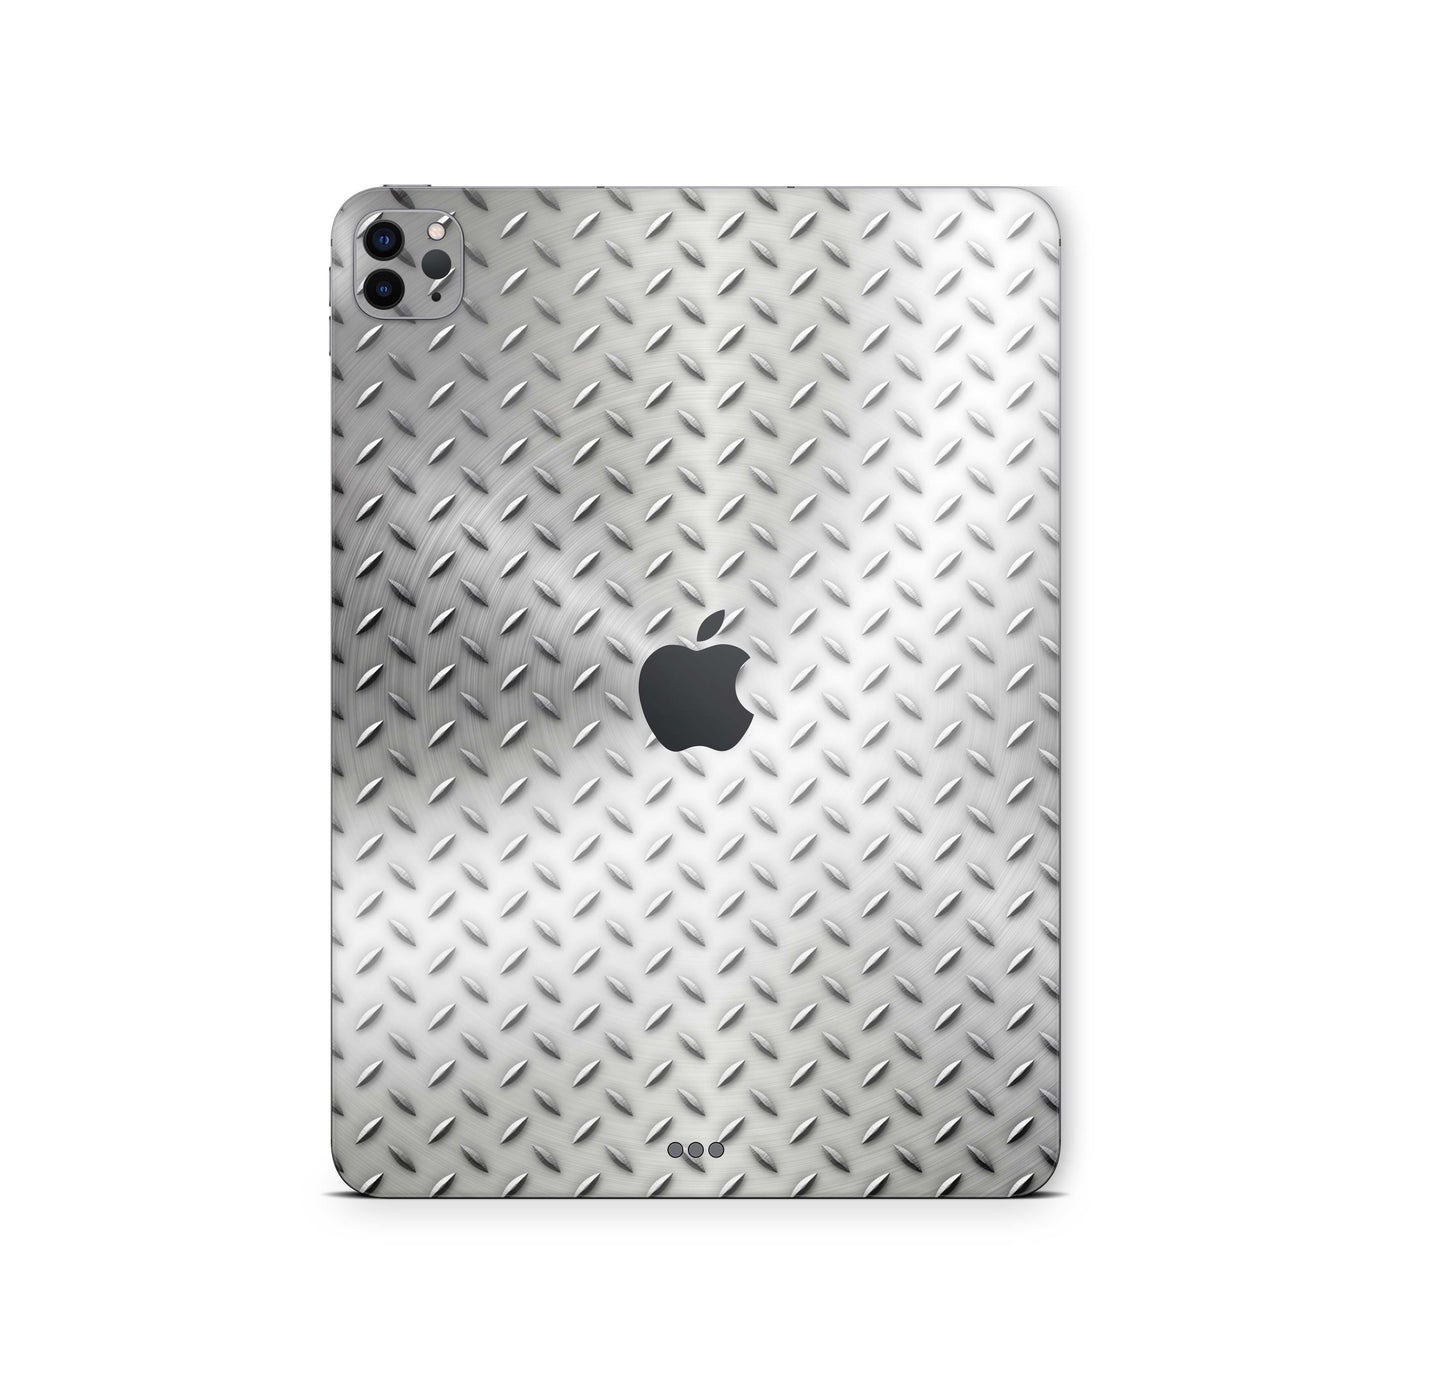 iPad Pro Skin 11" 2.Generation A2228 Design Cover Folie Vinyl Skins & Wraps Aufkleber Skins4u Stahl  